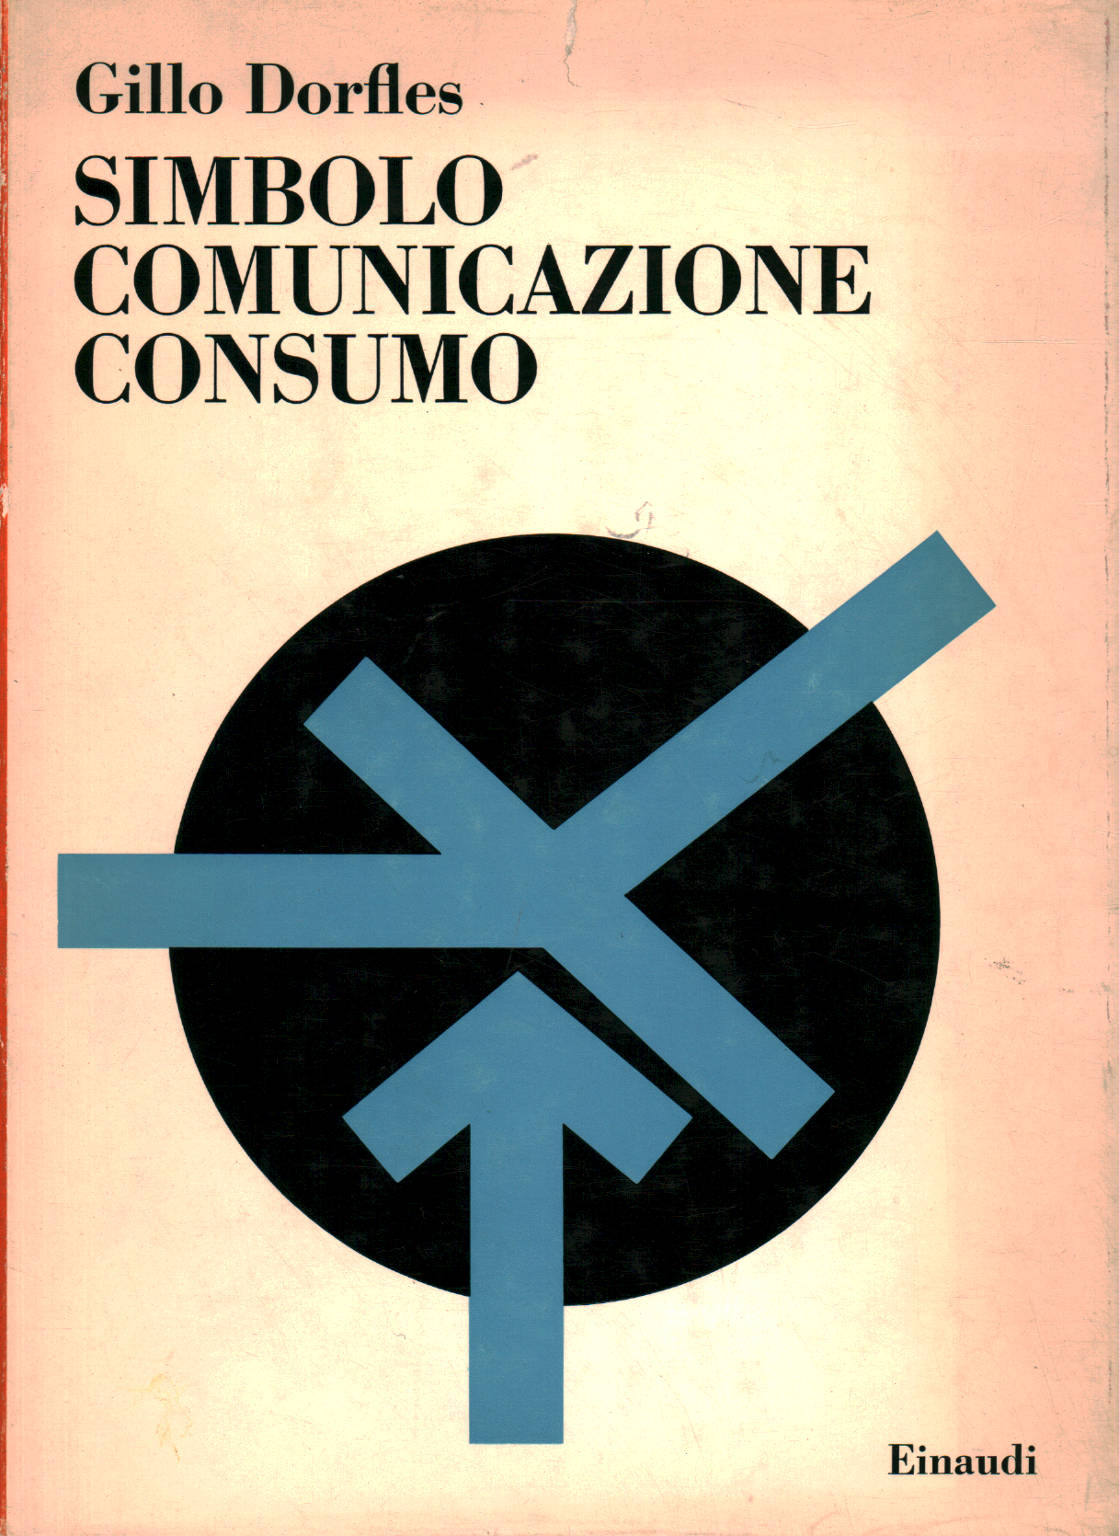 Símbolo de comunicación de consumo, Gillo Dorfles